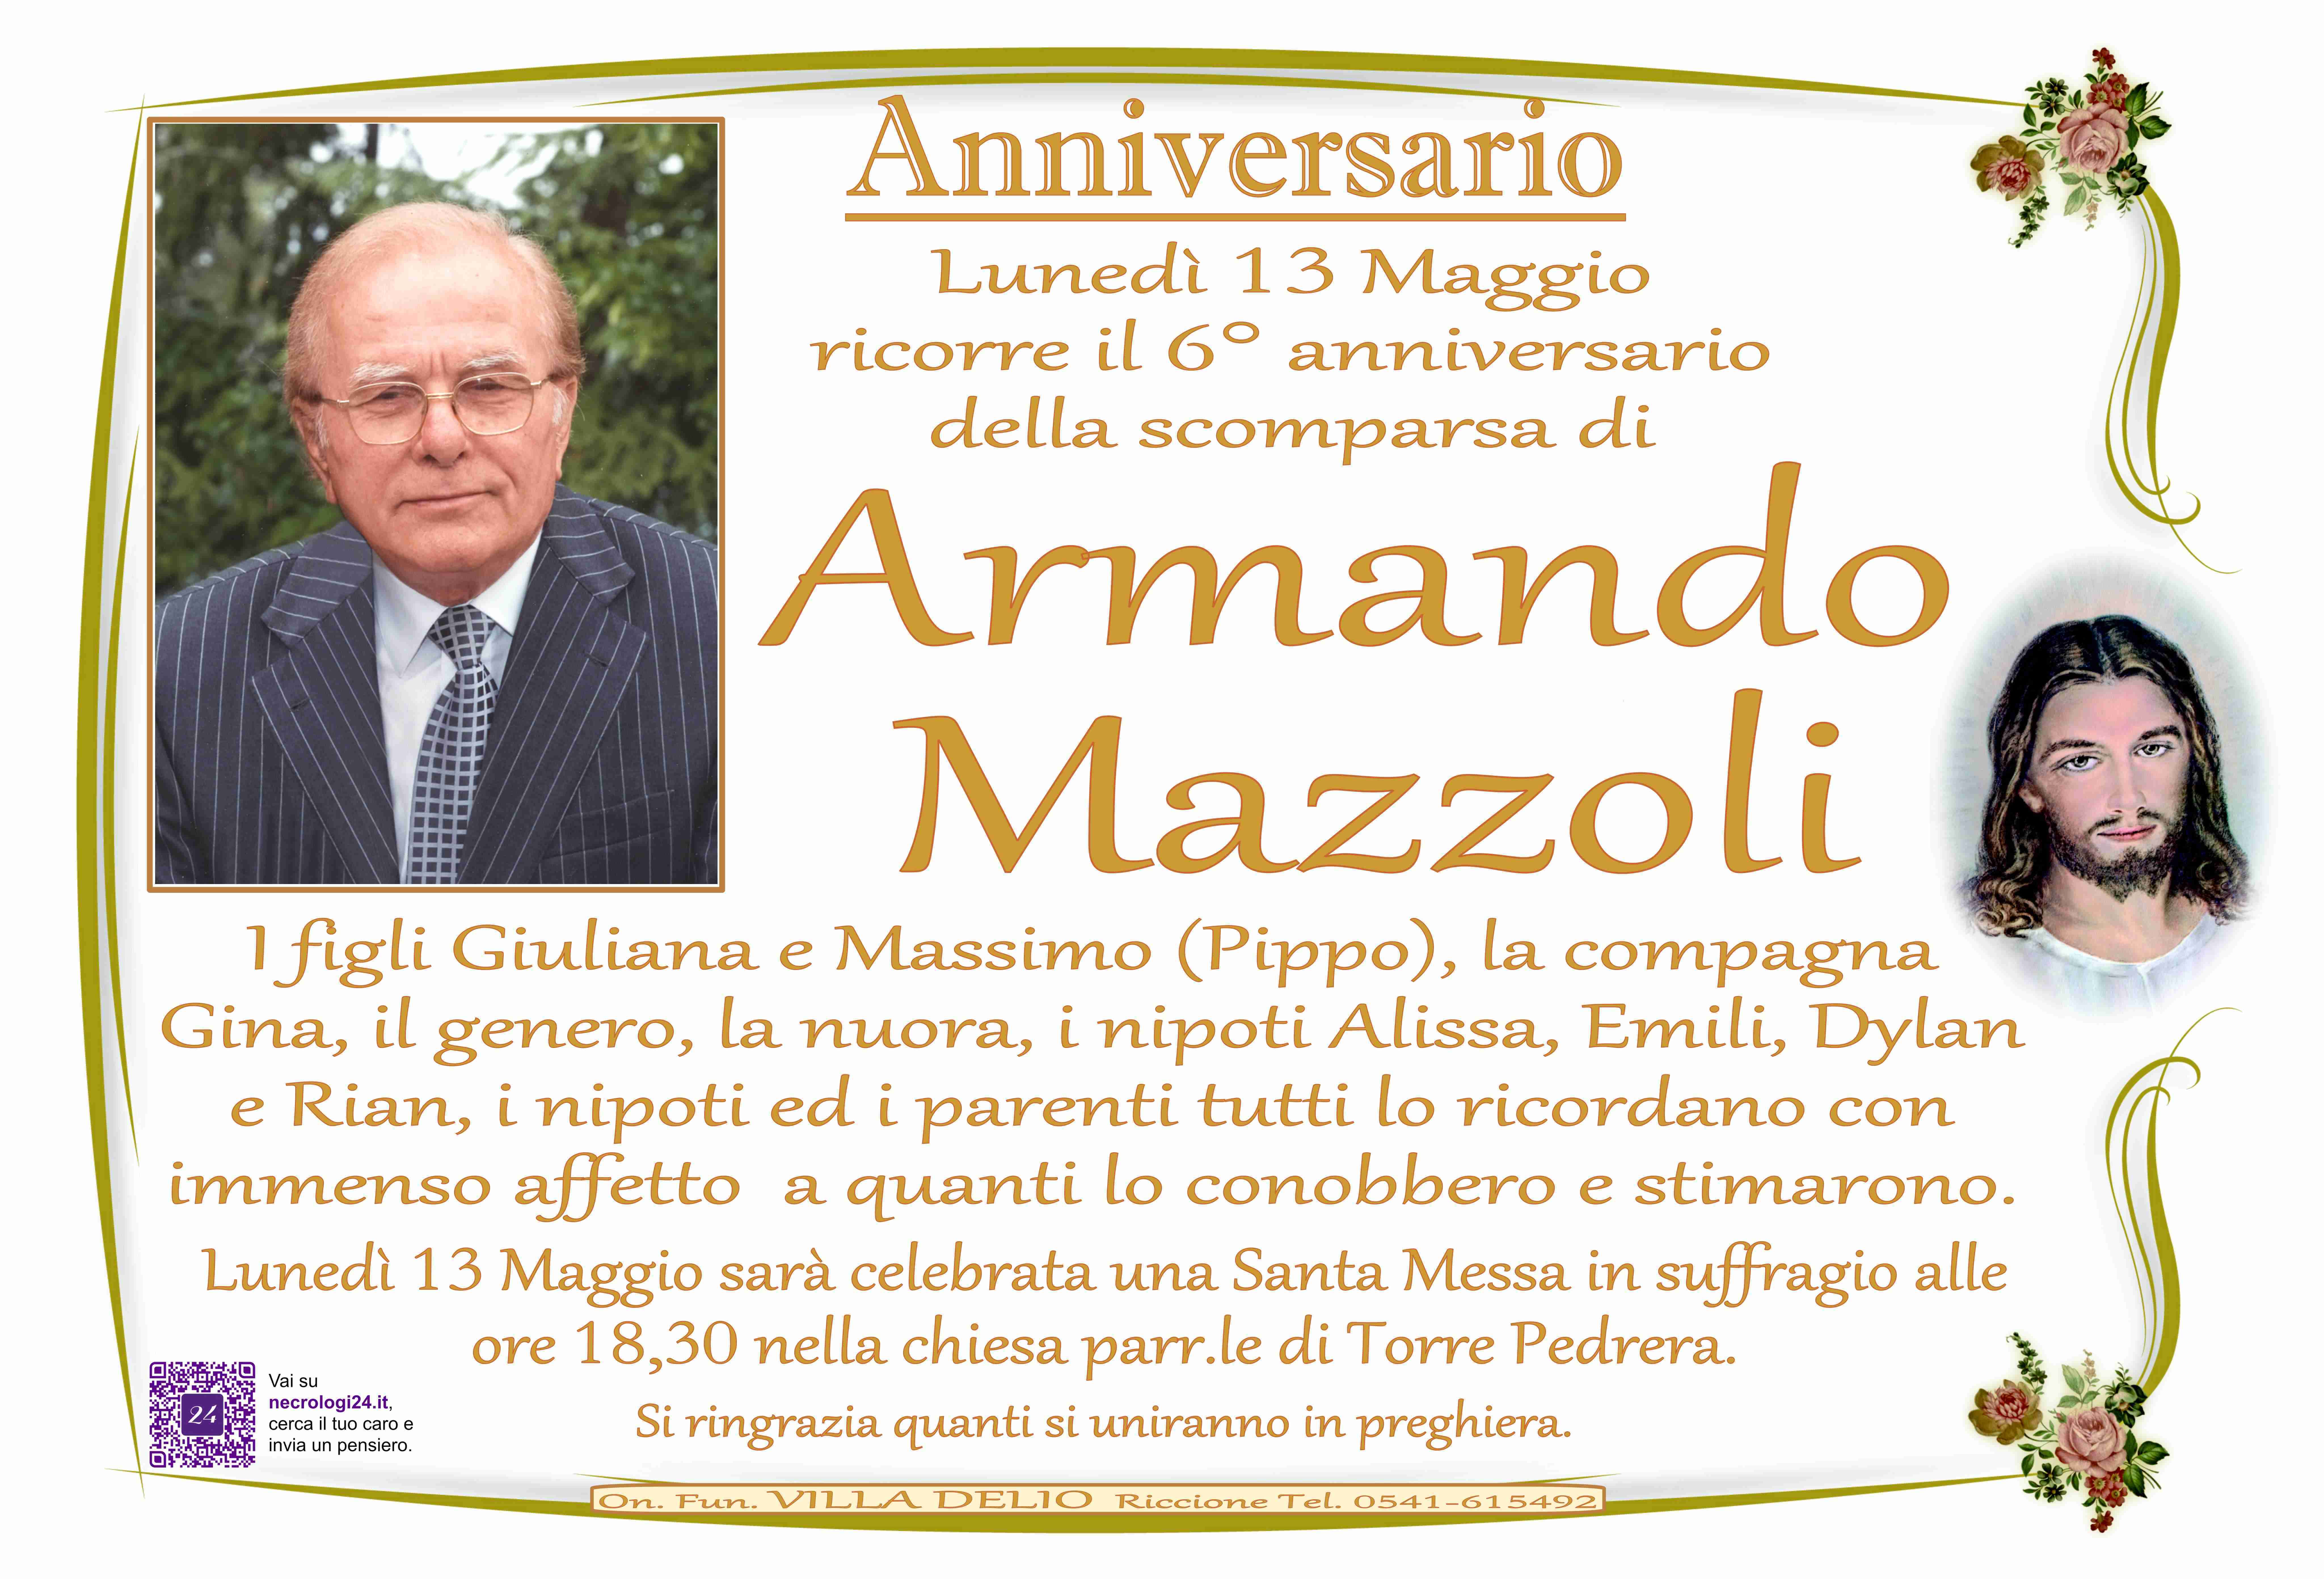 Armando Mazzoli